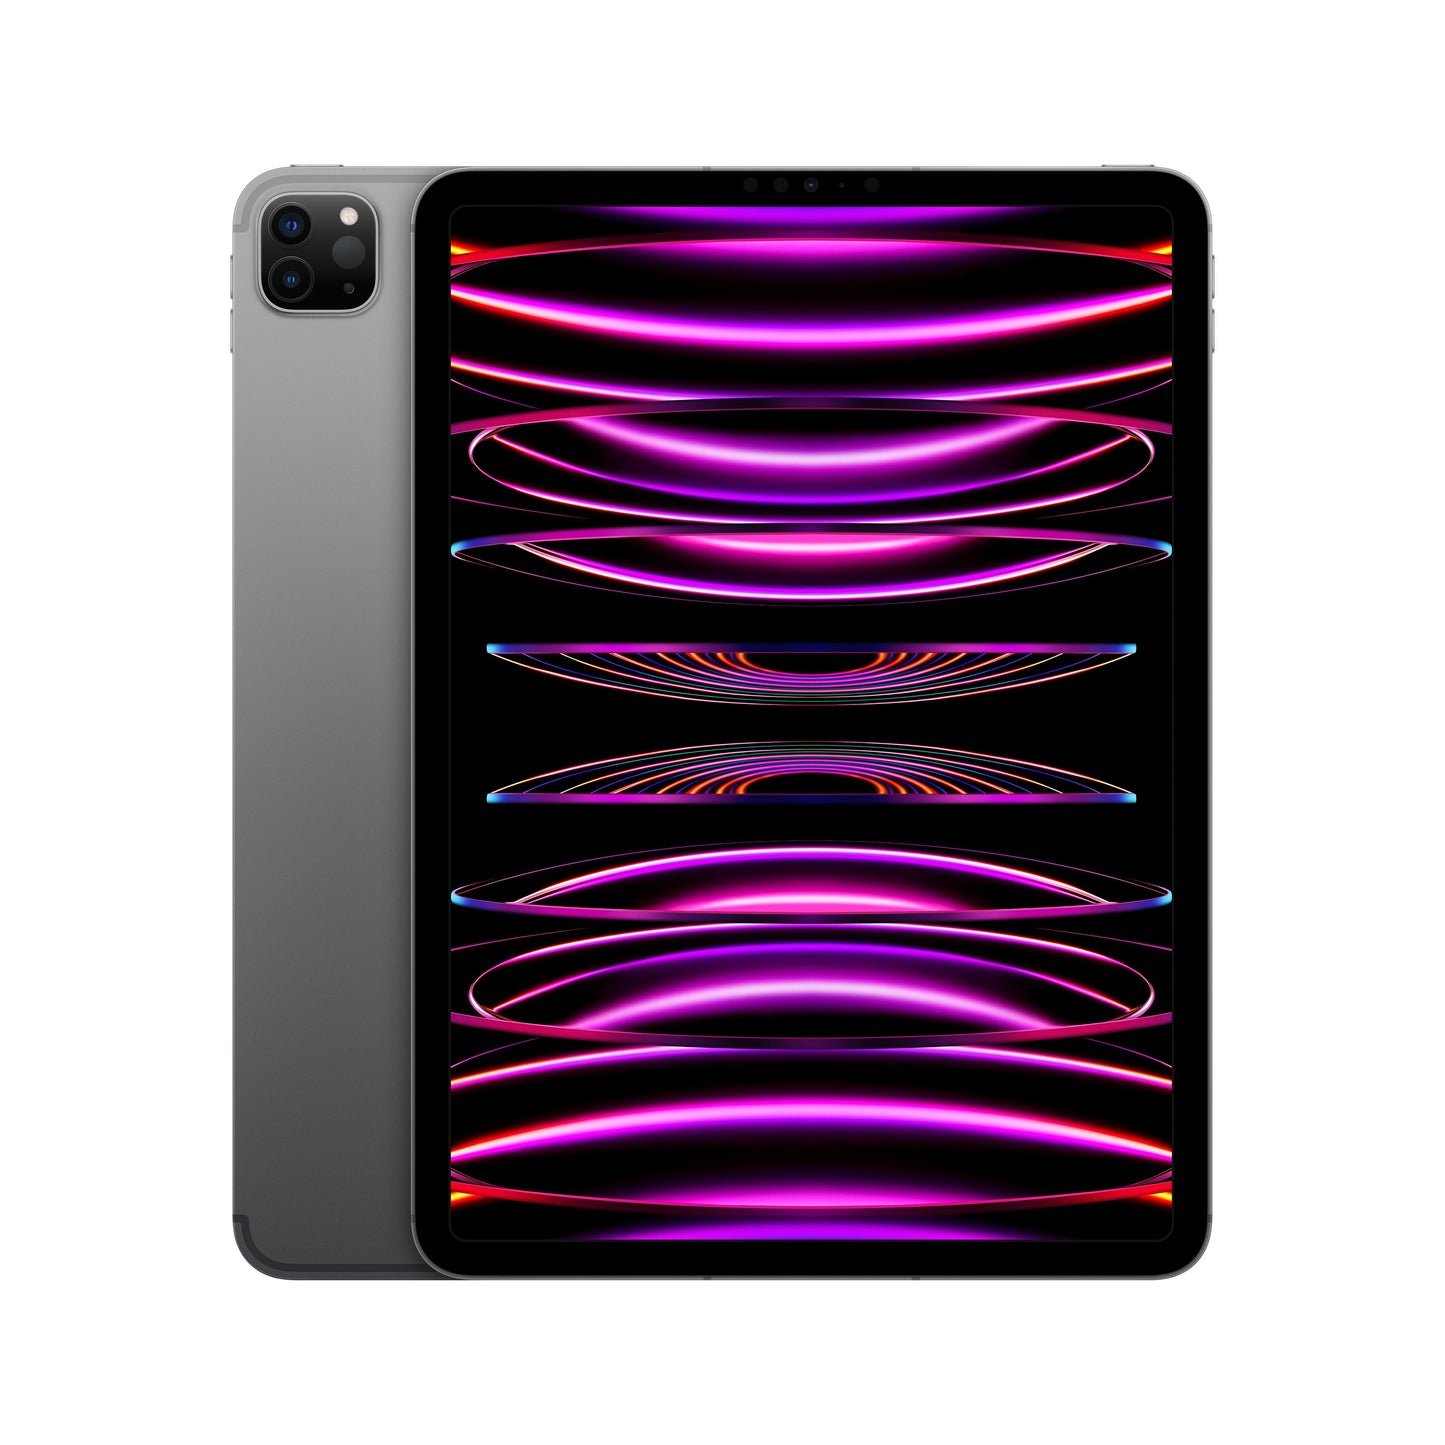 11-inch iPad Pro (4th Gen) Wi-Fi + Cellular 2TB - Space Grey